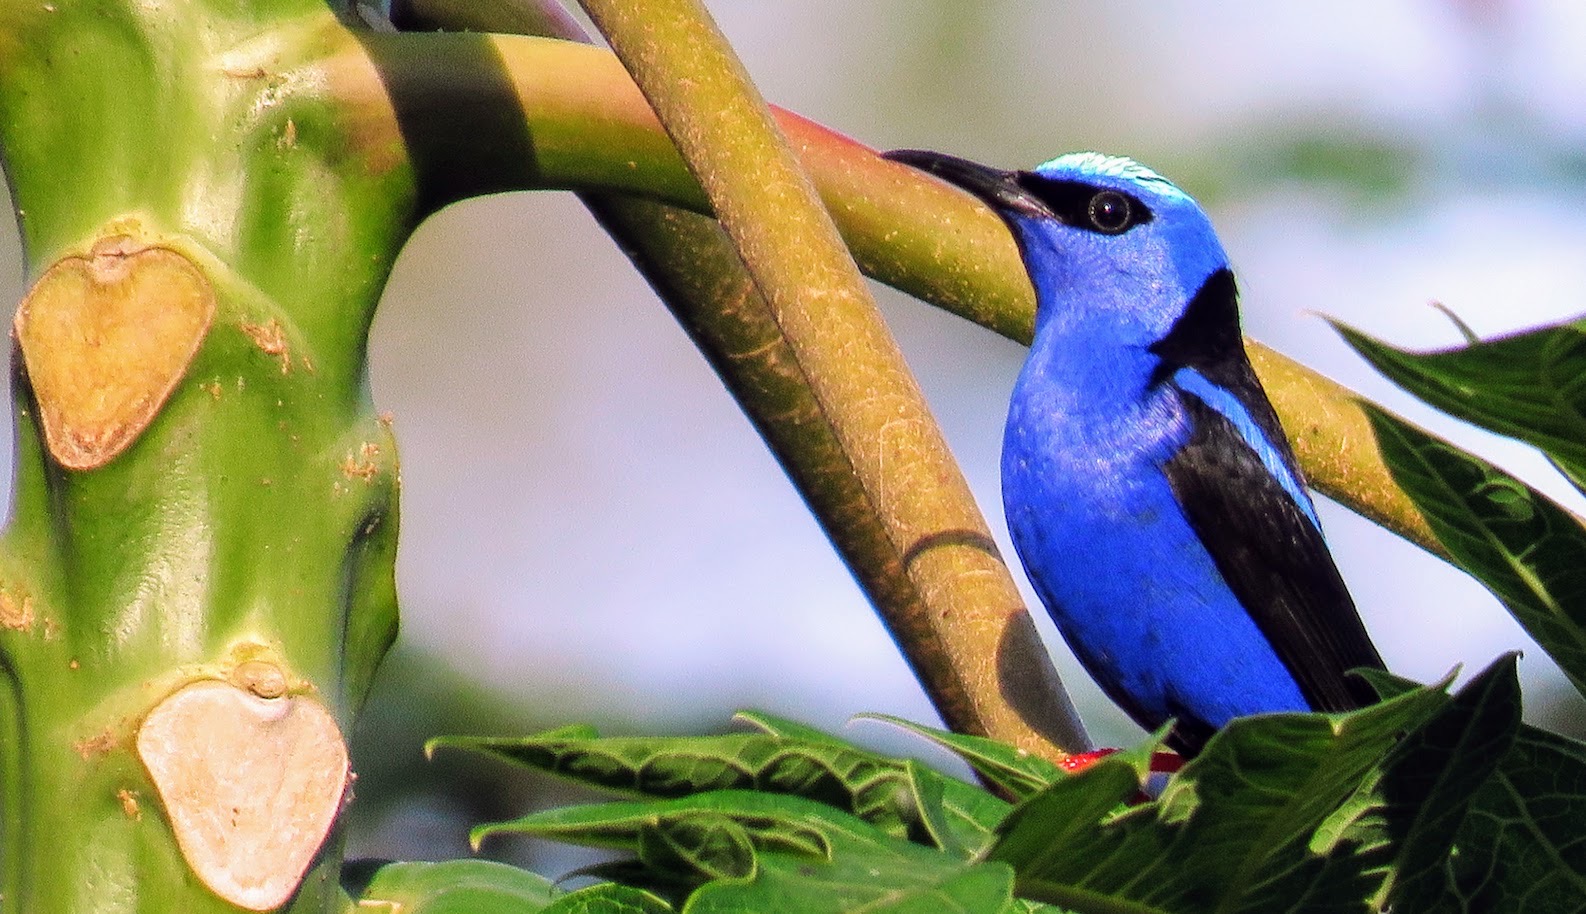 Identifying Costa Rica Birds